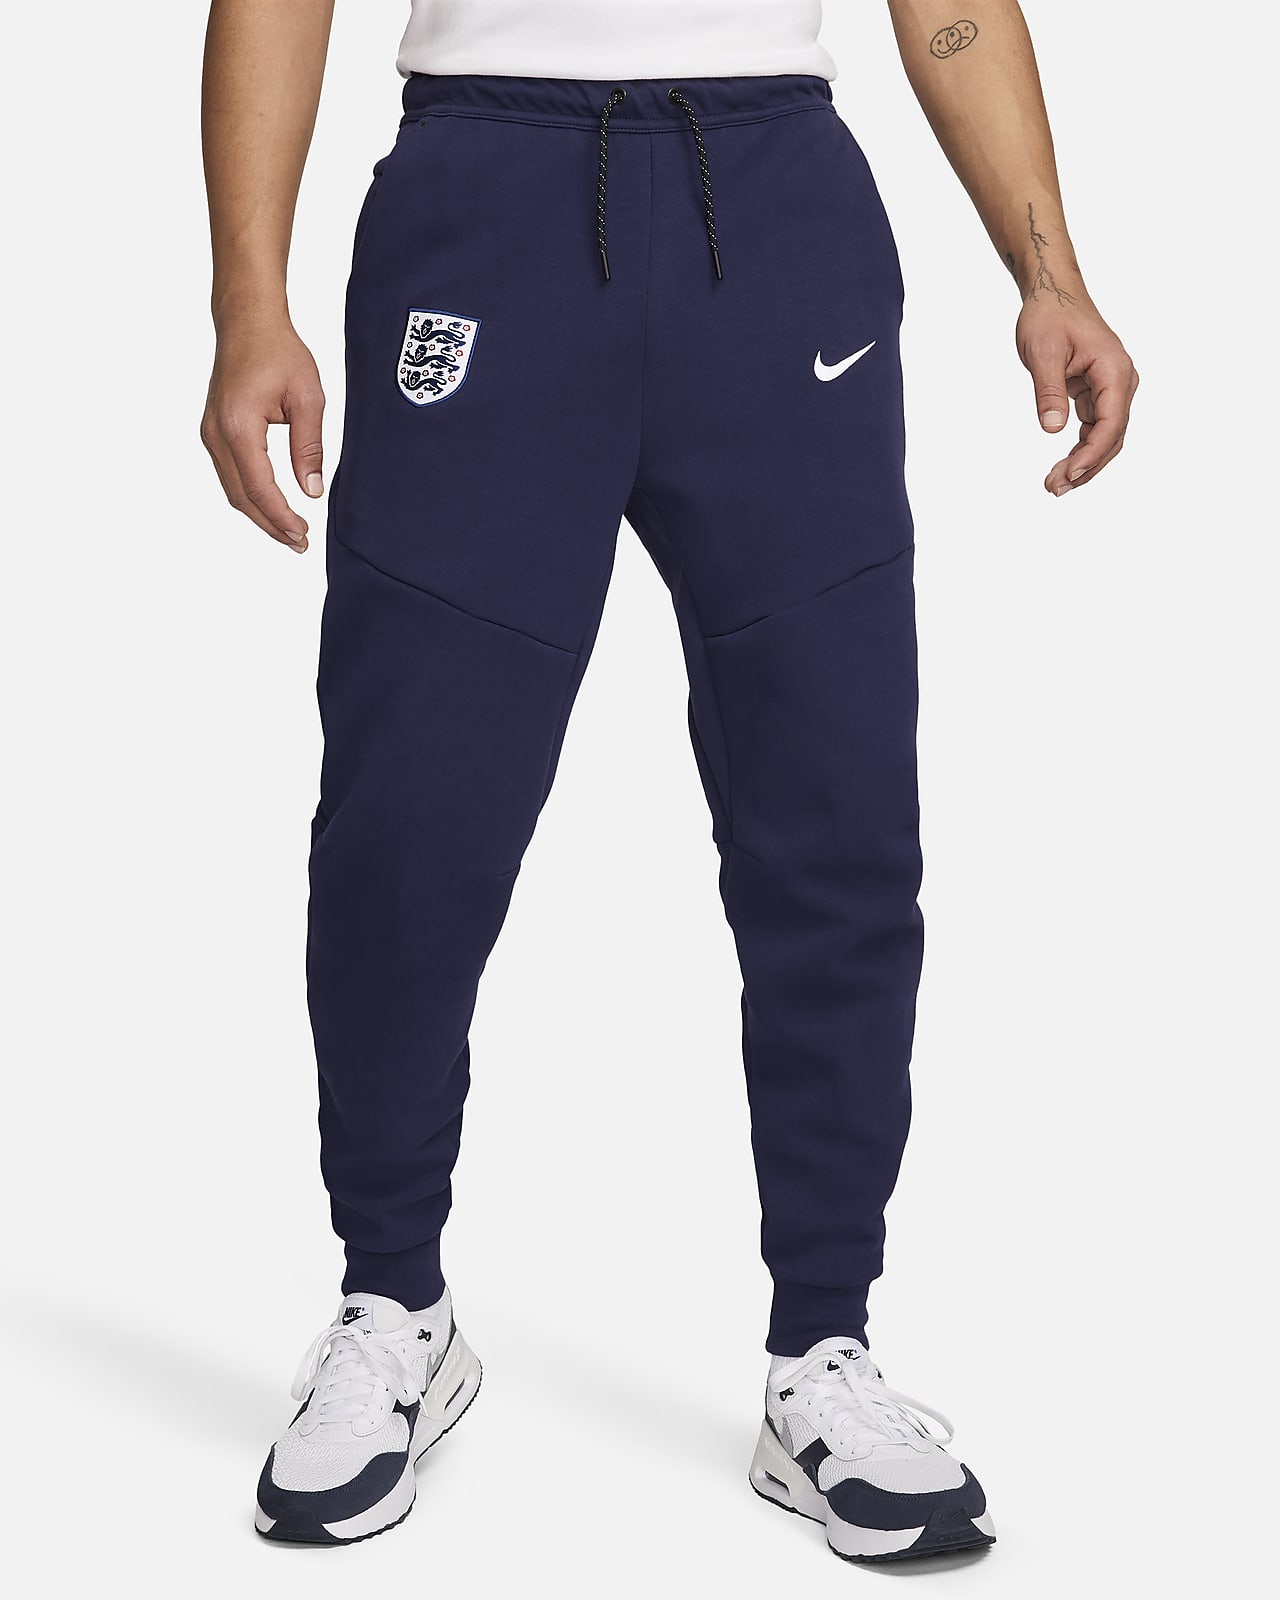 Anglia Tech Fleece Nike Soccer férfi szabadidőnadrág